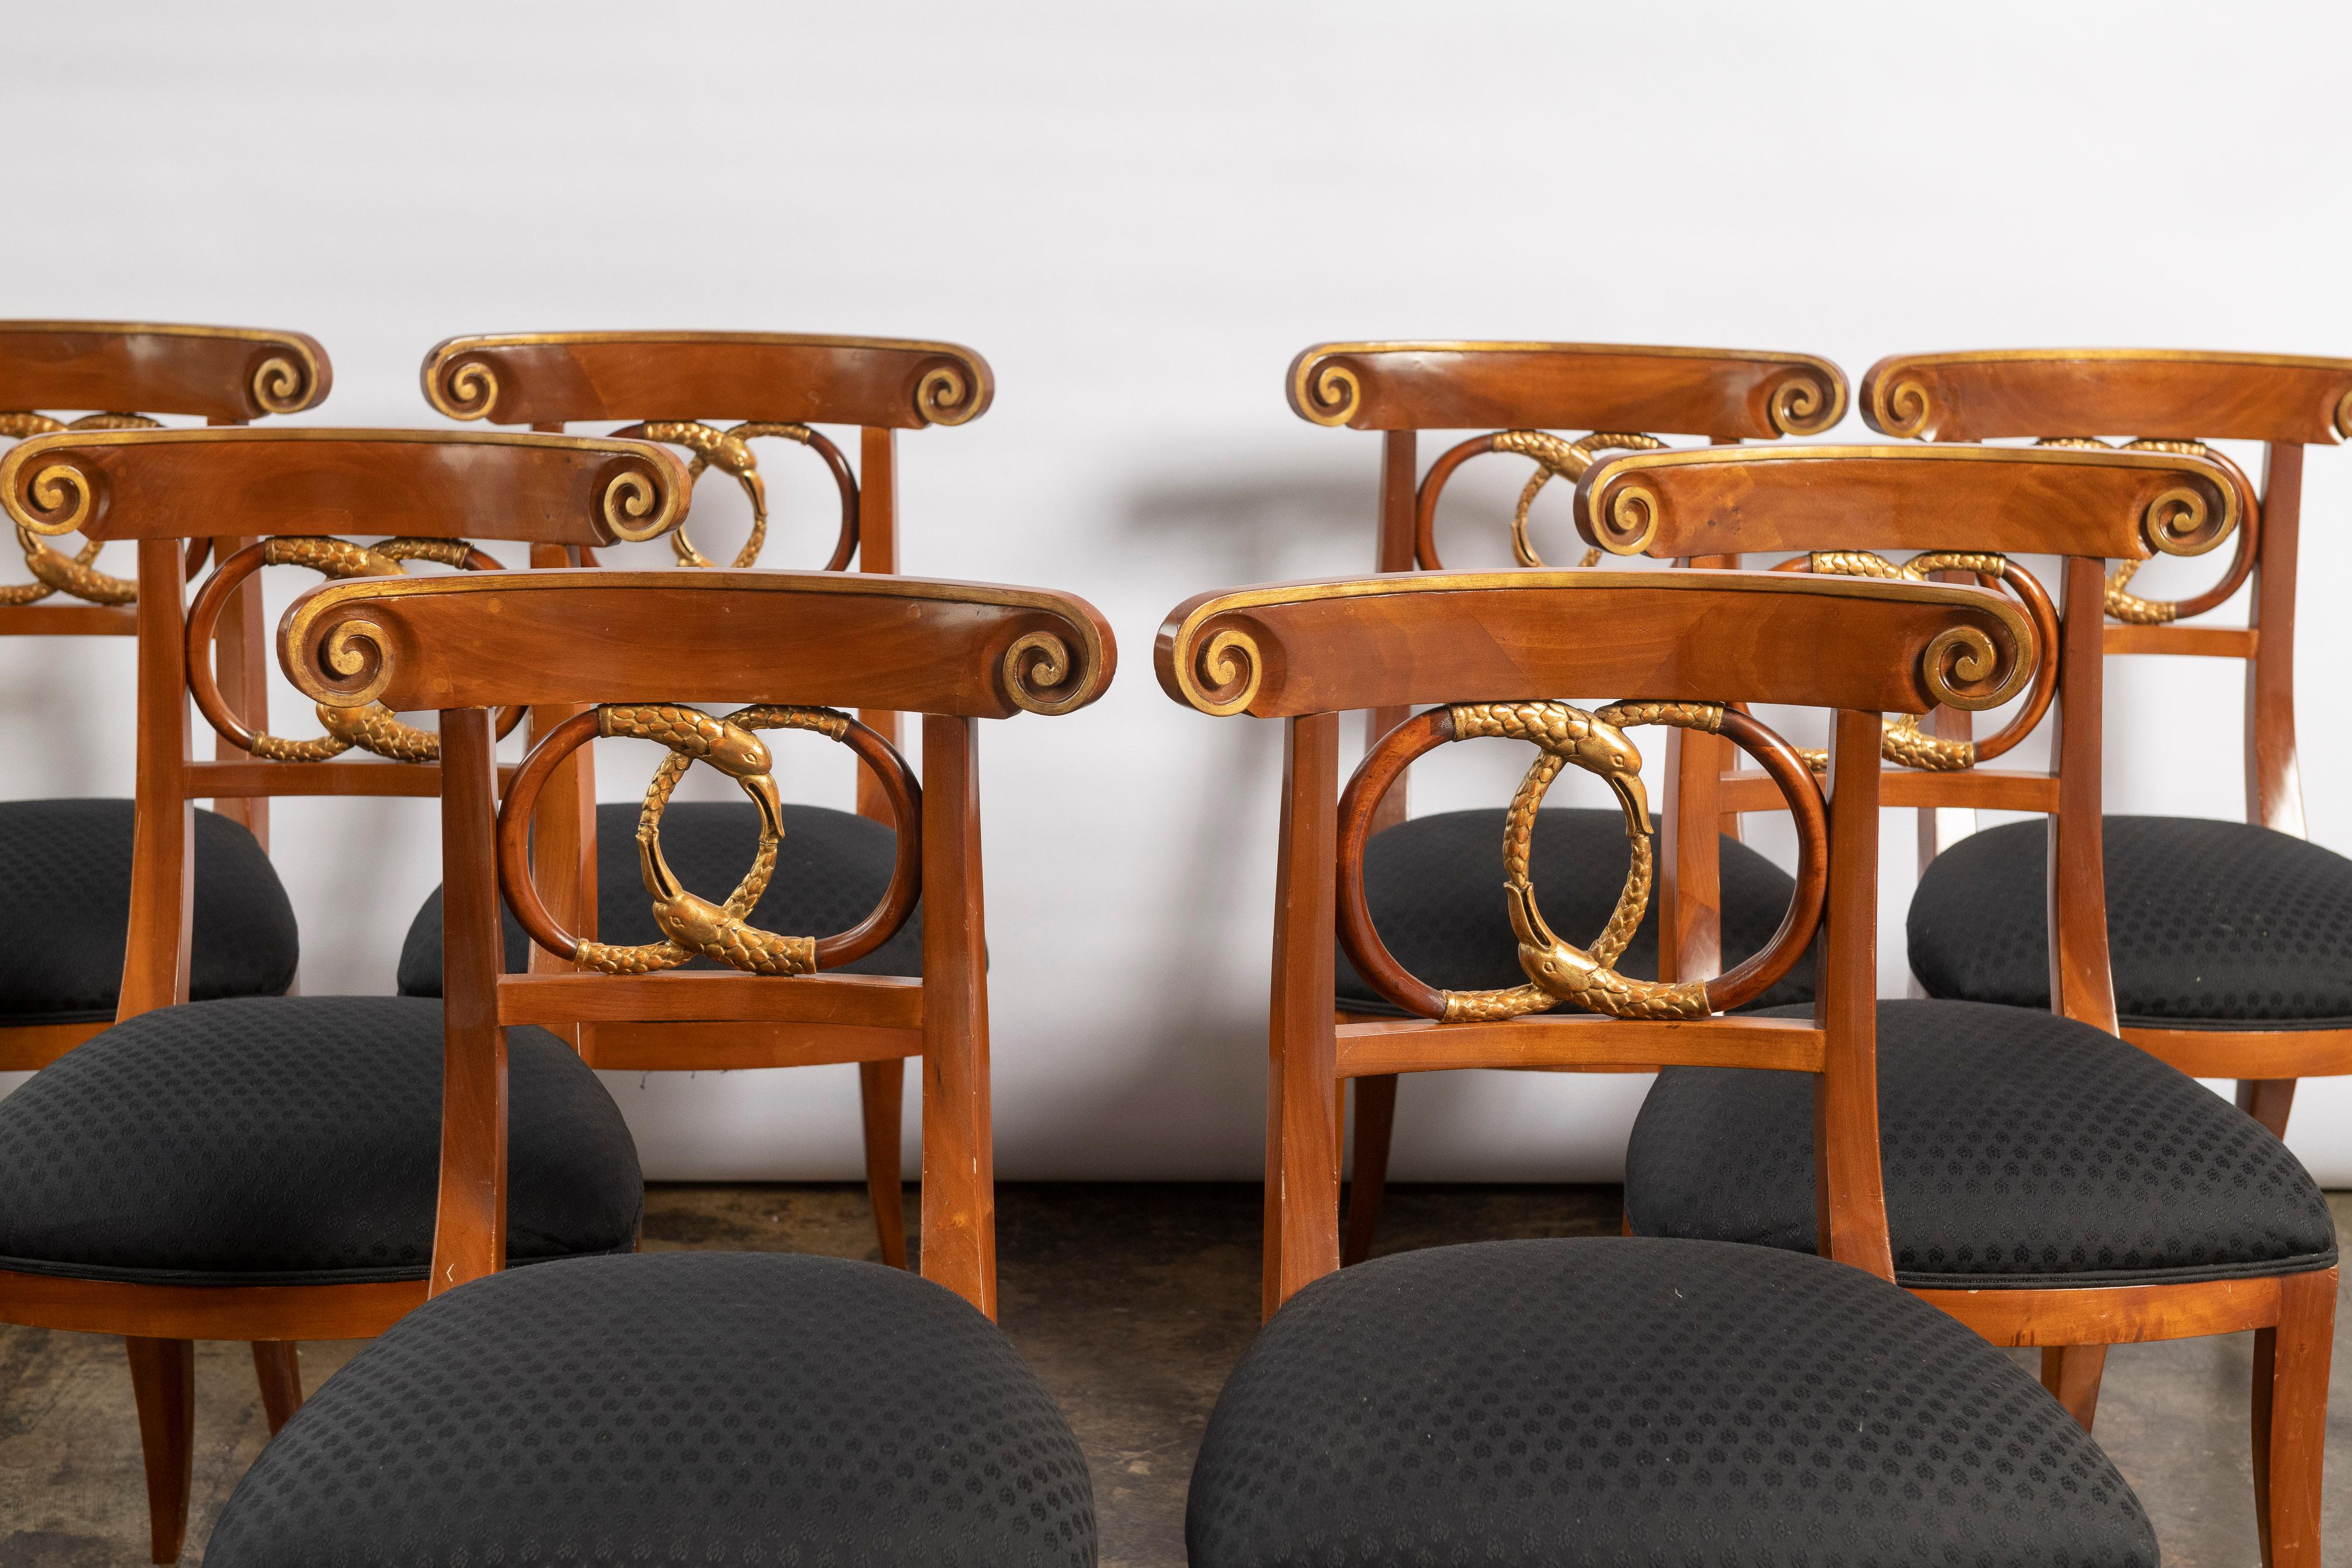 Satz von acht schön proportionierten Mahagoni-Esszimmerstühlen im Biedermeier-Stil von Burton-Ching.  Die Stühle haben anmutige, schräg nach außen gestellte Beine, eine Rückenlehne mit geschnitzten, ineinander verschlungenen Schlangen in einem